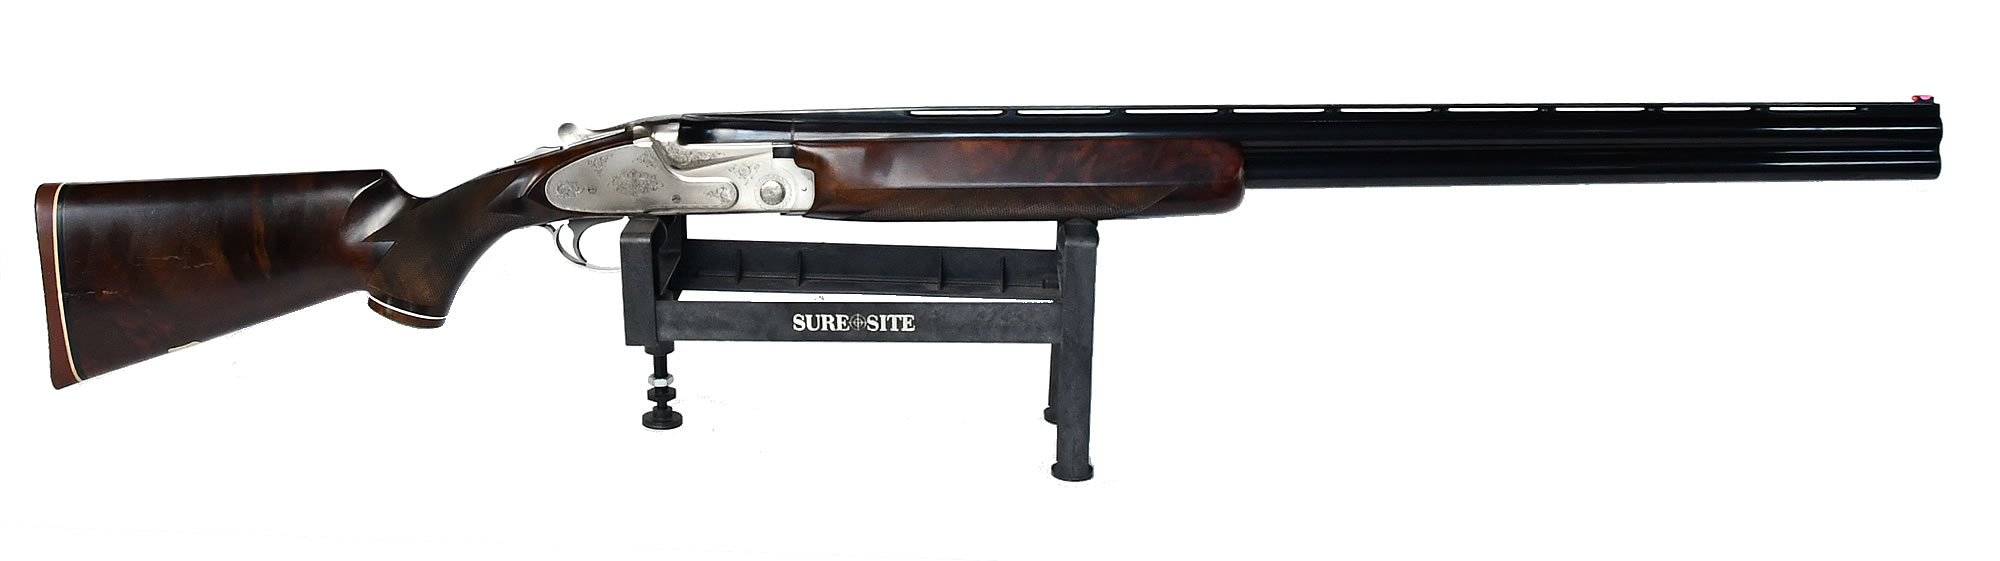 散弾銃NEW SKB MODEL5000